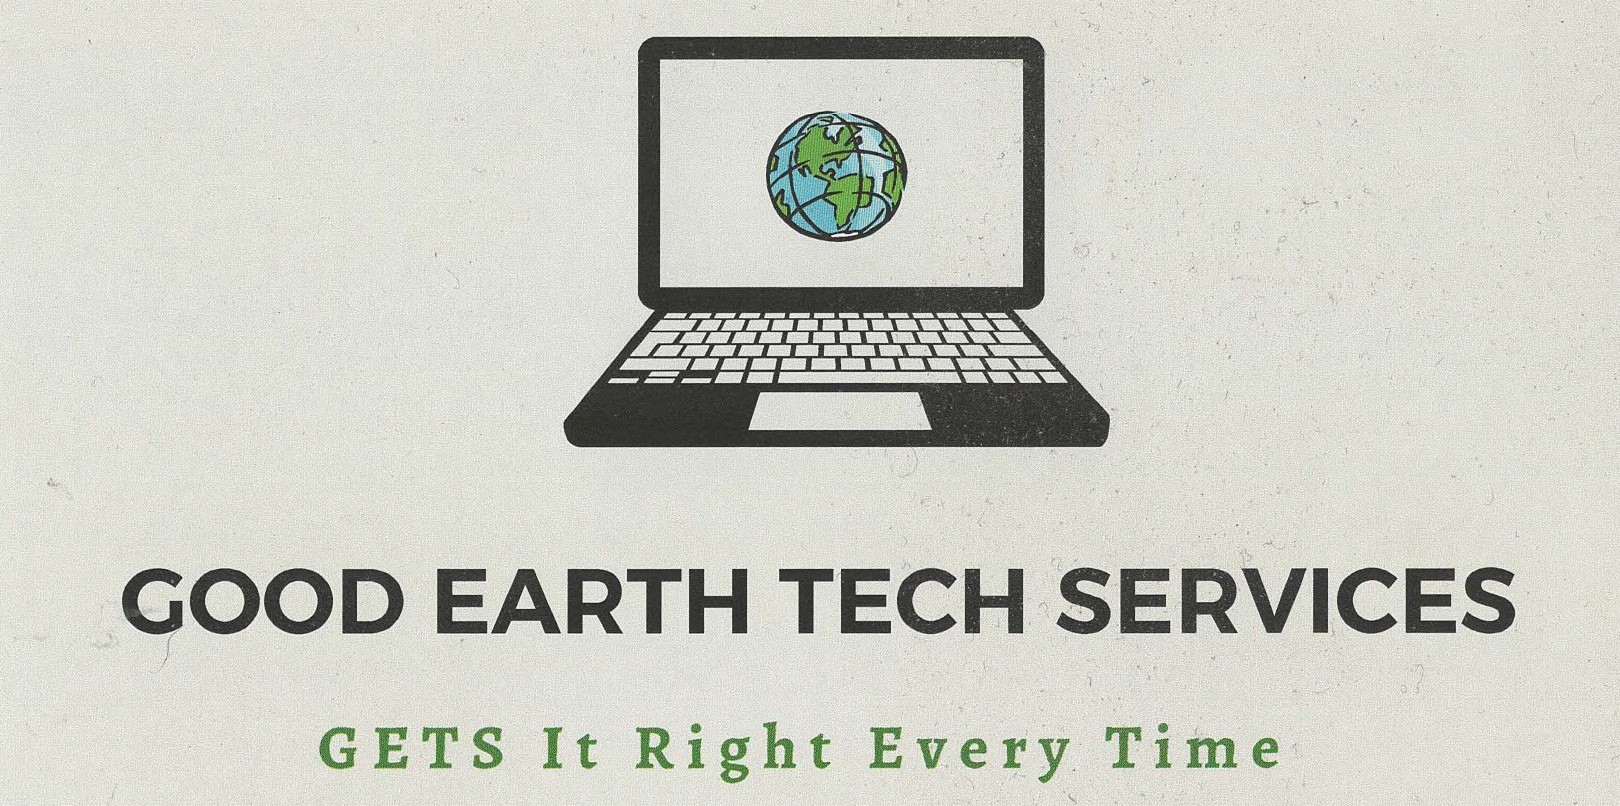 Good Earth Tech Services